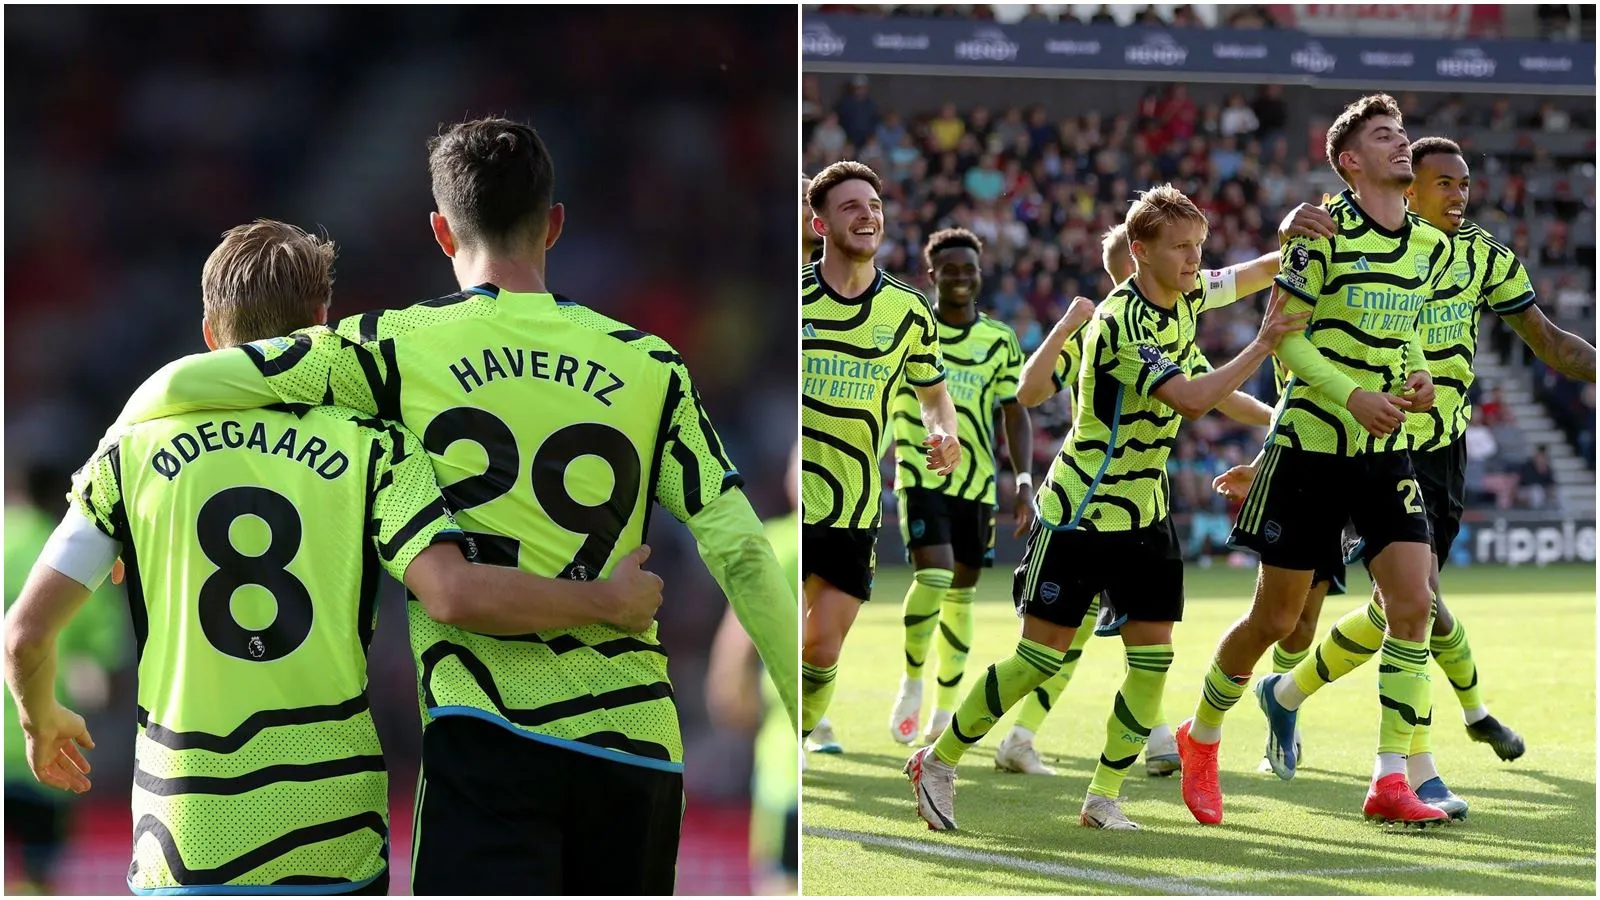 Chấm điểm Bournemouth 0-4 Arsenal: Kai Havertz mở tài khoản | Martin Odegaard bùng nổ giúp “Pháo thủ” thắng đậm